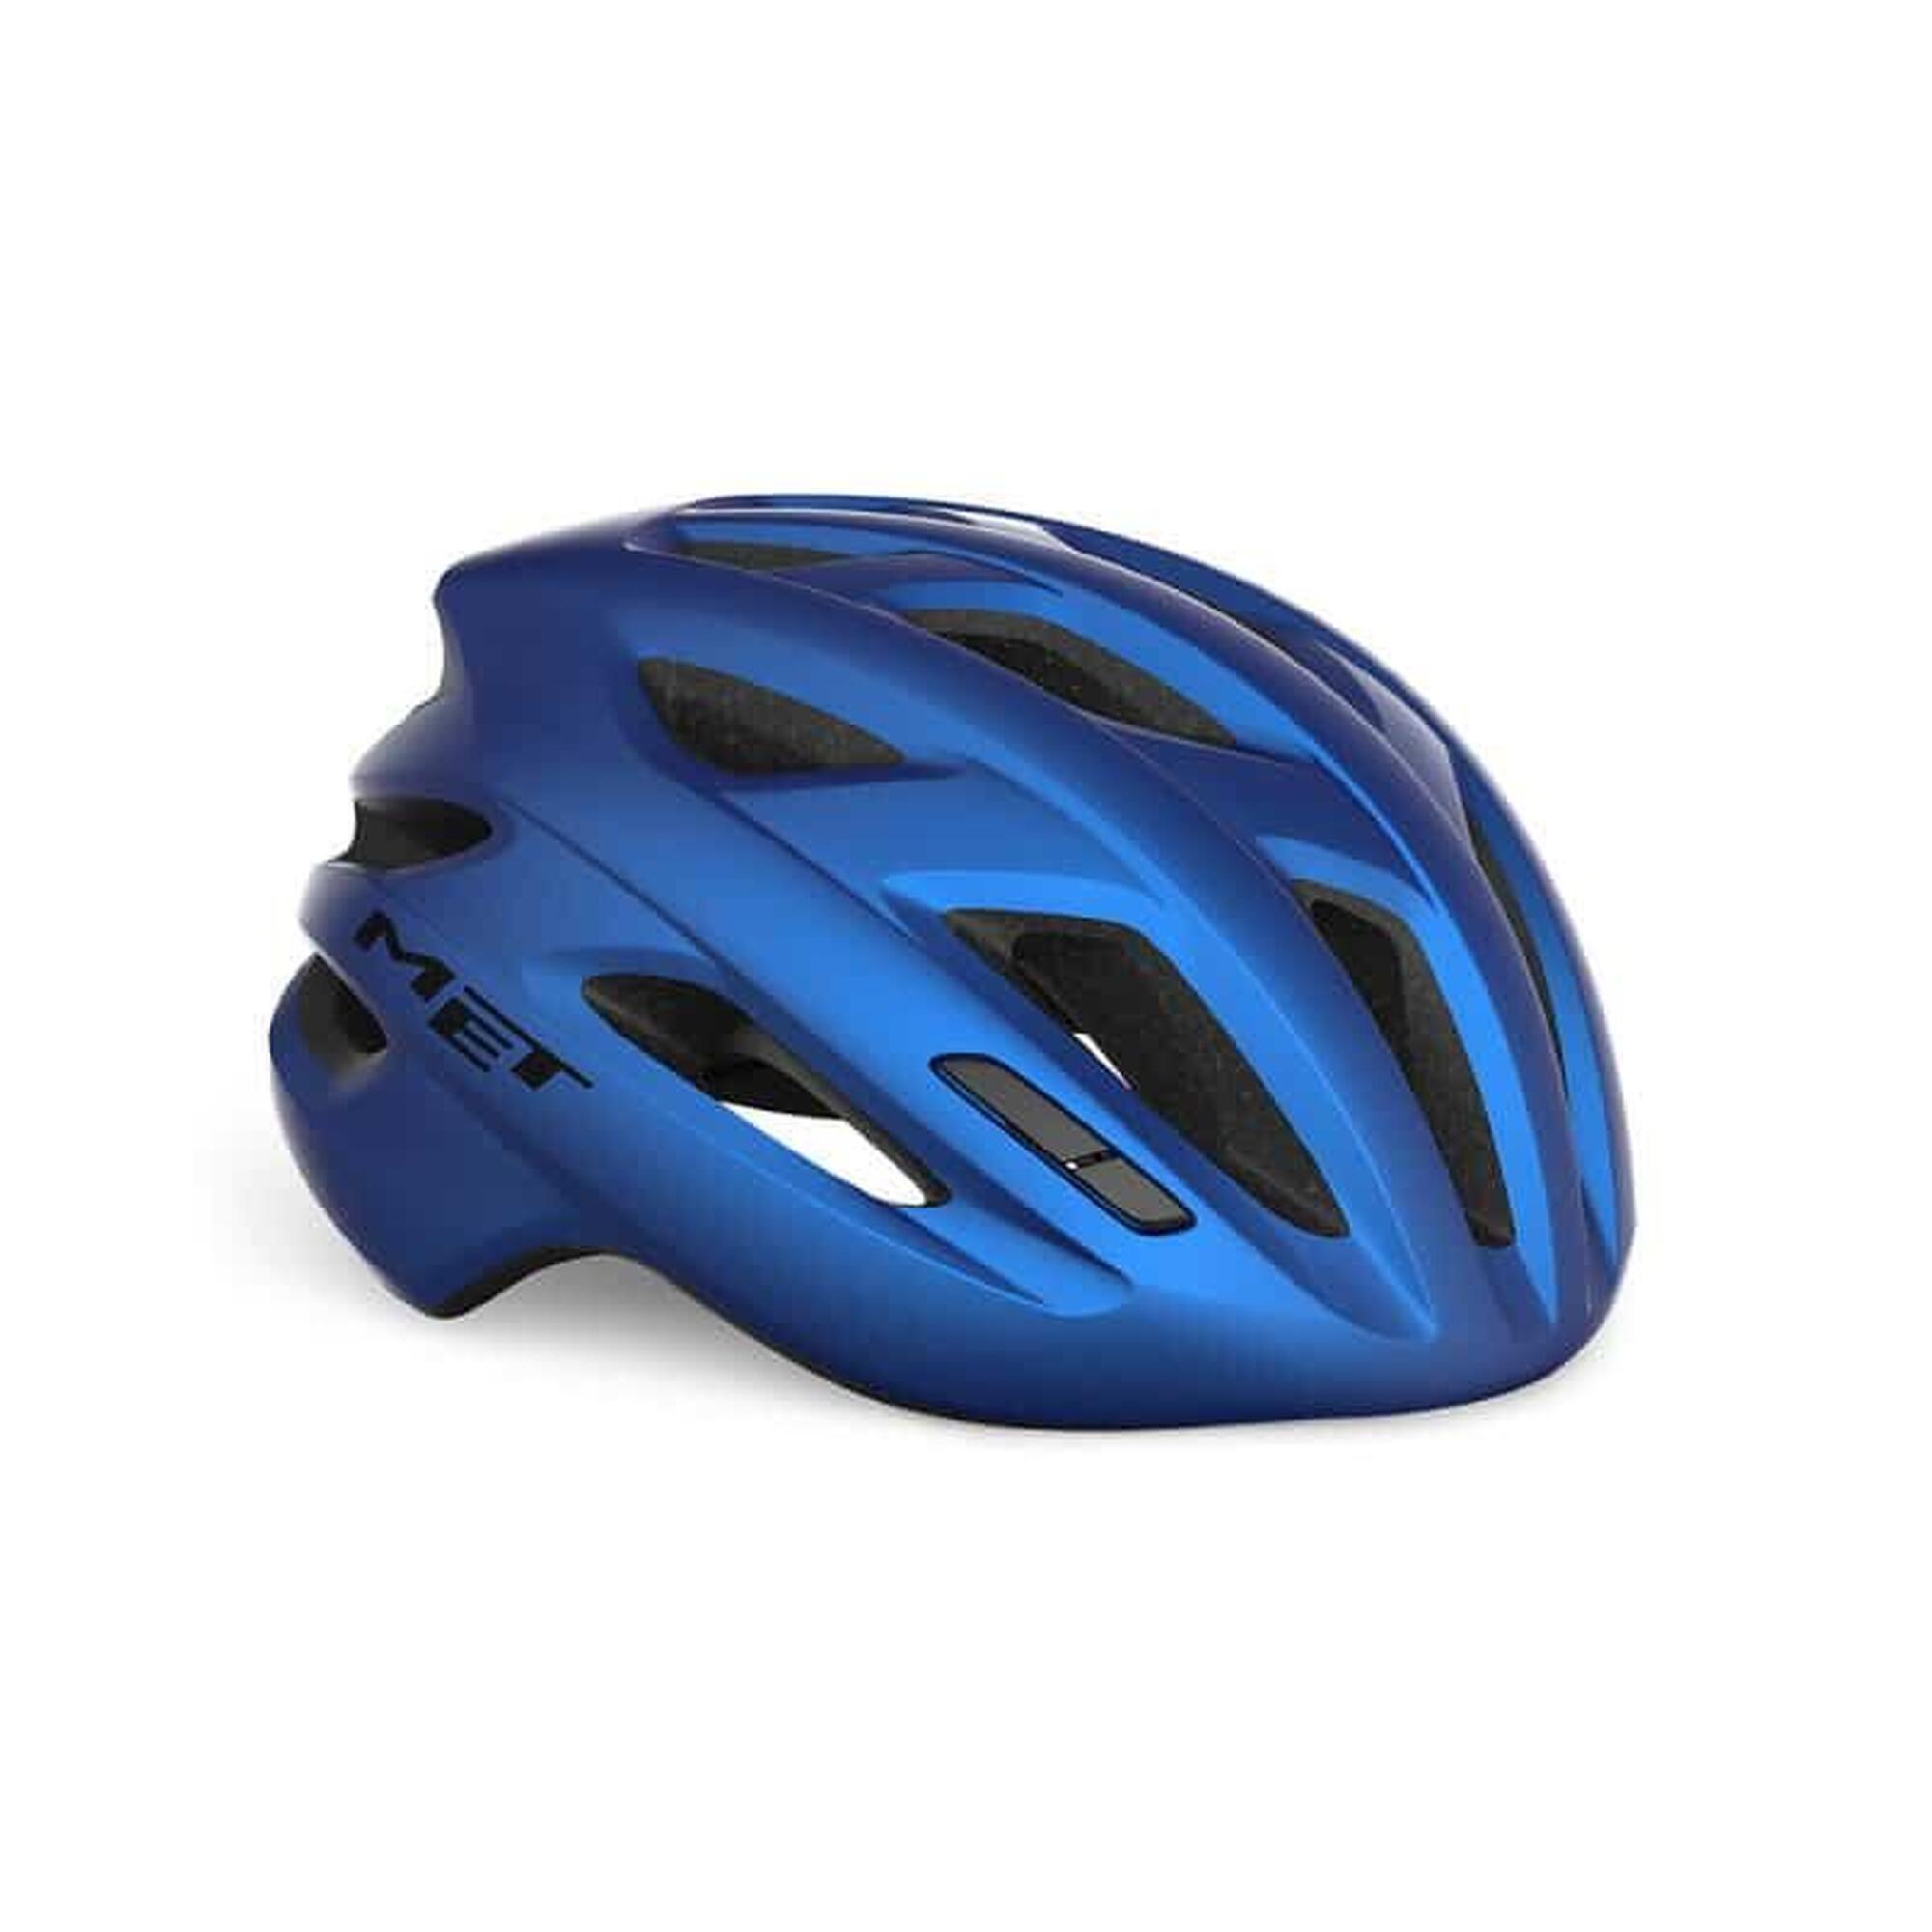 MET IDOLO MIPS Blue Metallic XL Road Bike Helmet 1/6